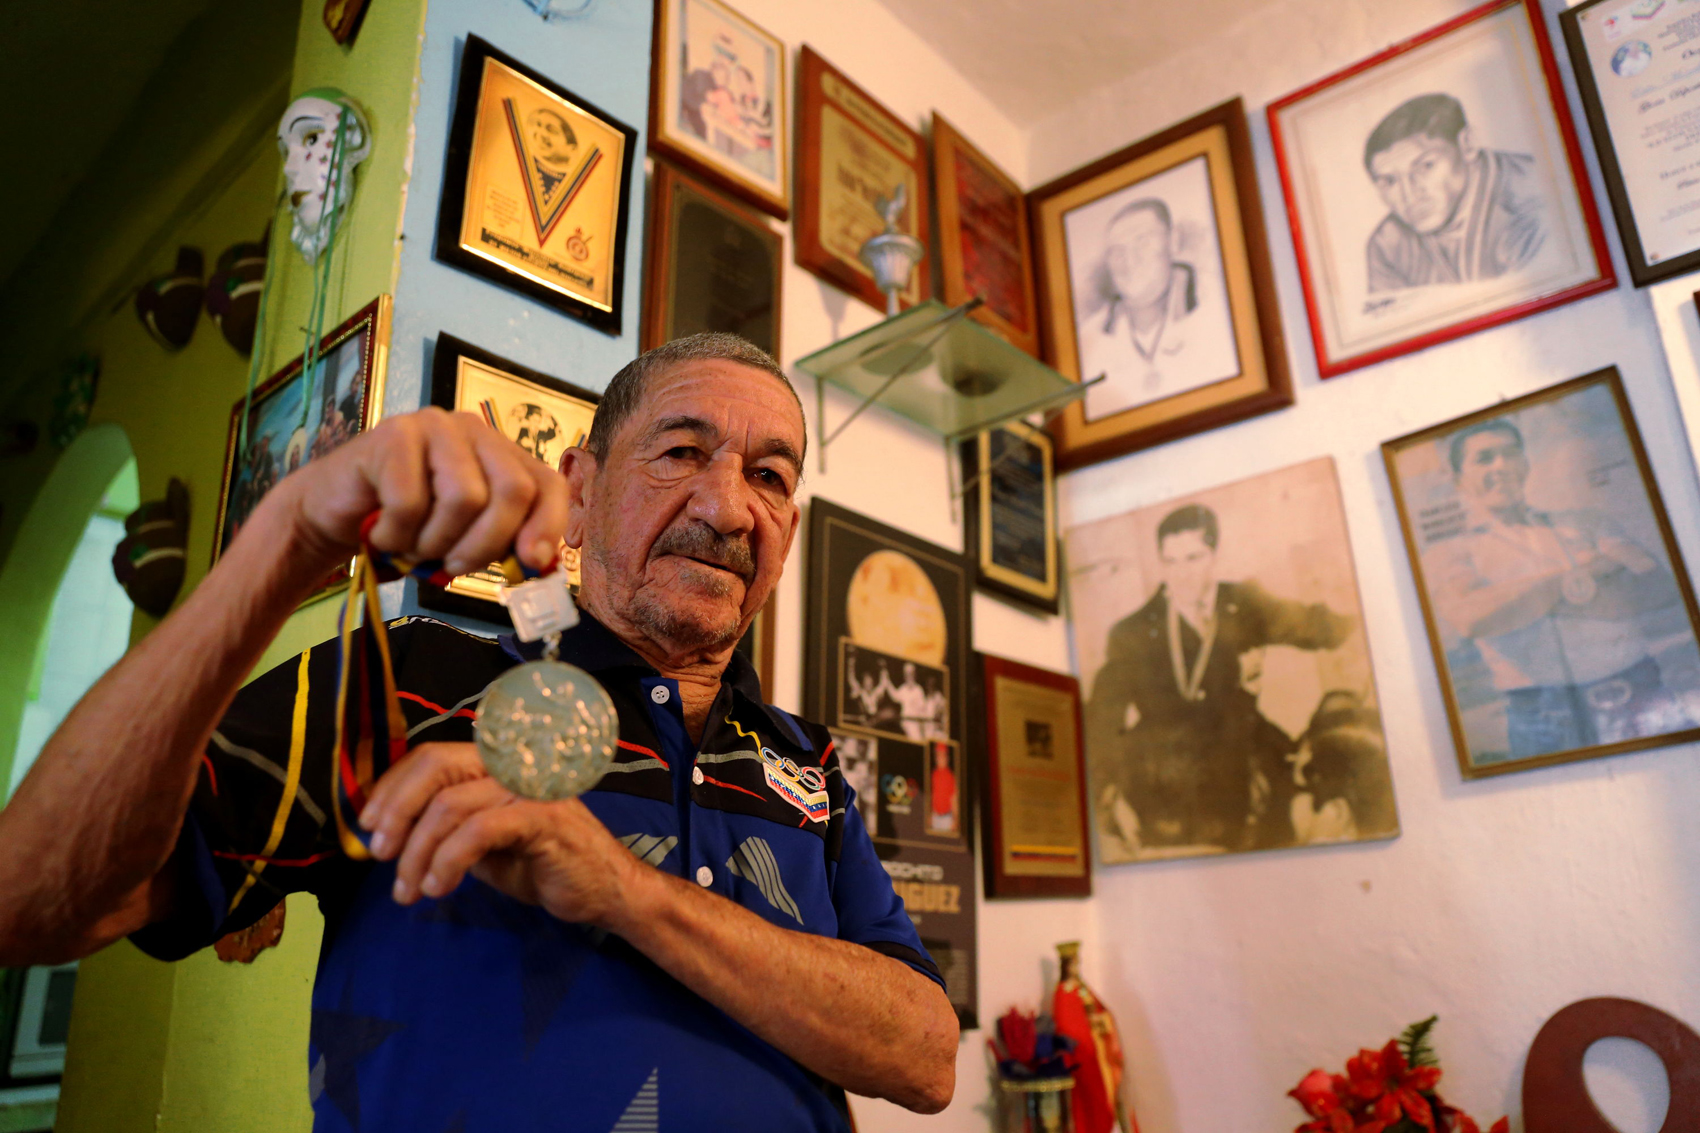 Rinden homenaje a Francisco “Morochito” Rodríguez por los 50 años de su oro olímpico